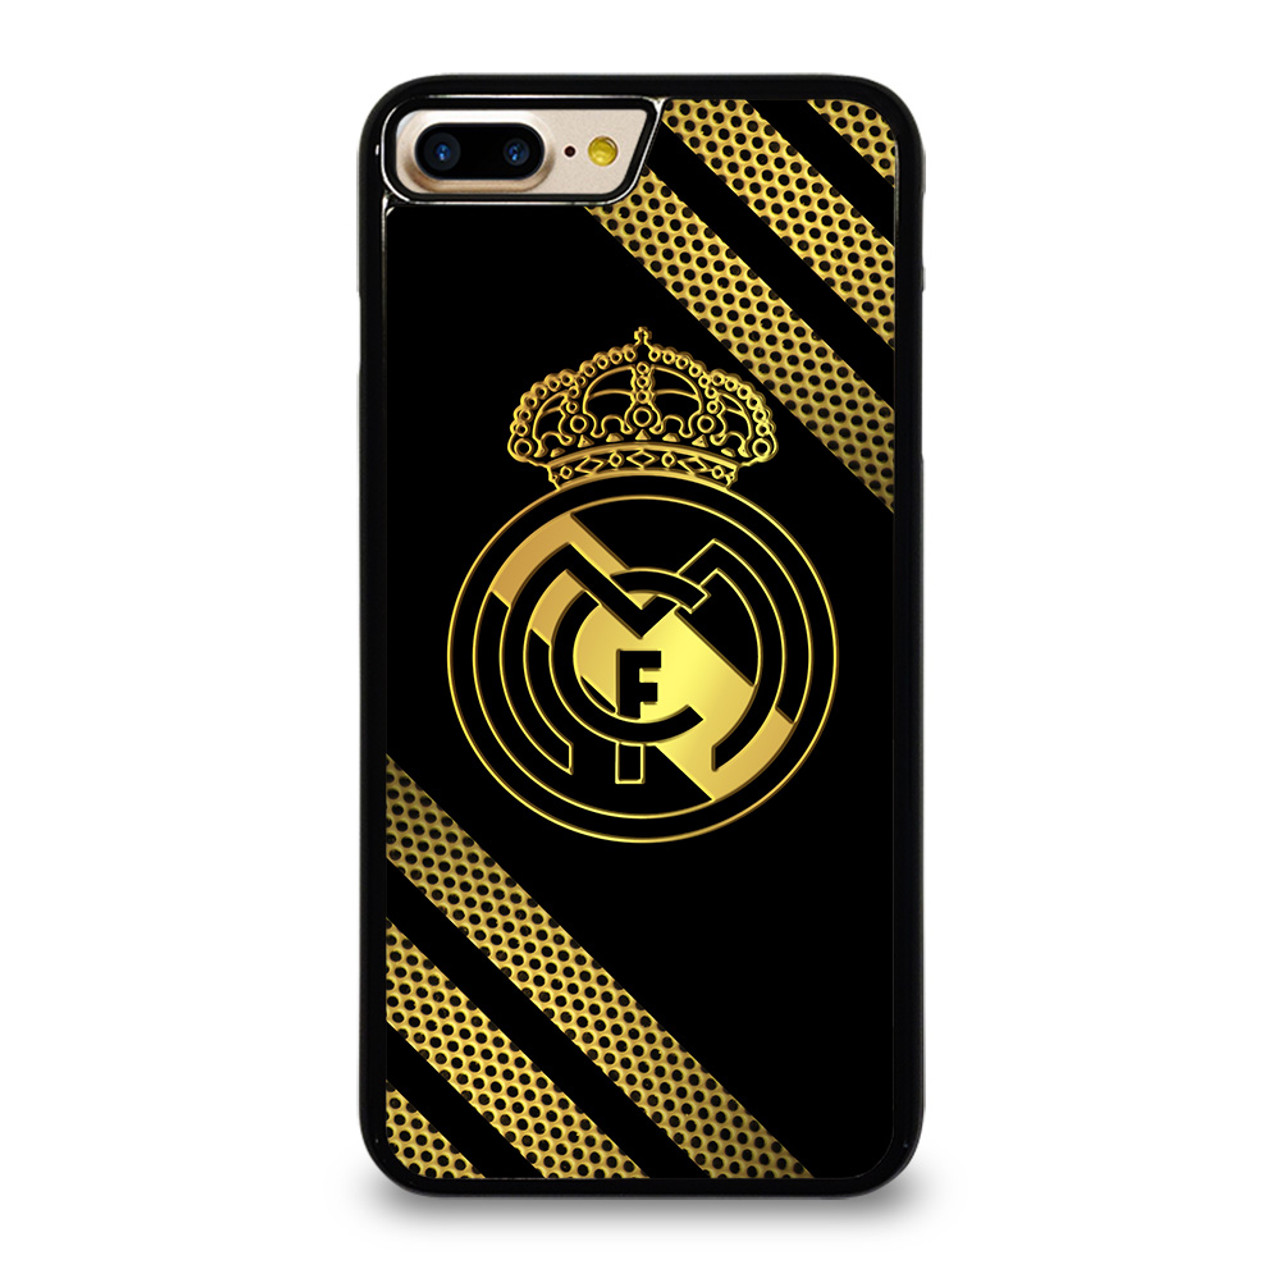 Реал 11 телефон. Чехол на Реал ми 11. Real Madrid iphone Case. Реал Мадрид чехол на телефон. Чехол Реал Мадрид на айфон 11.